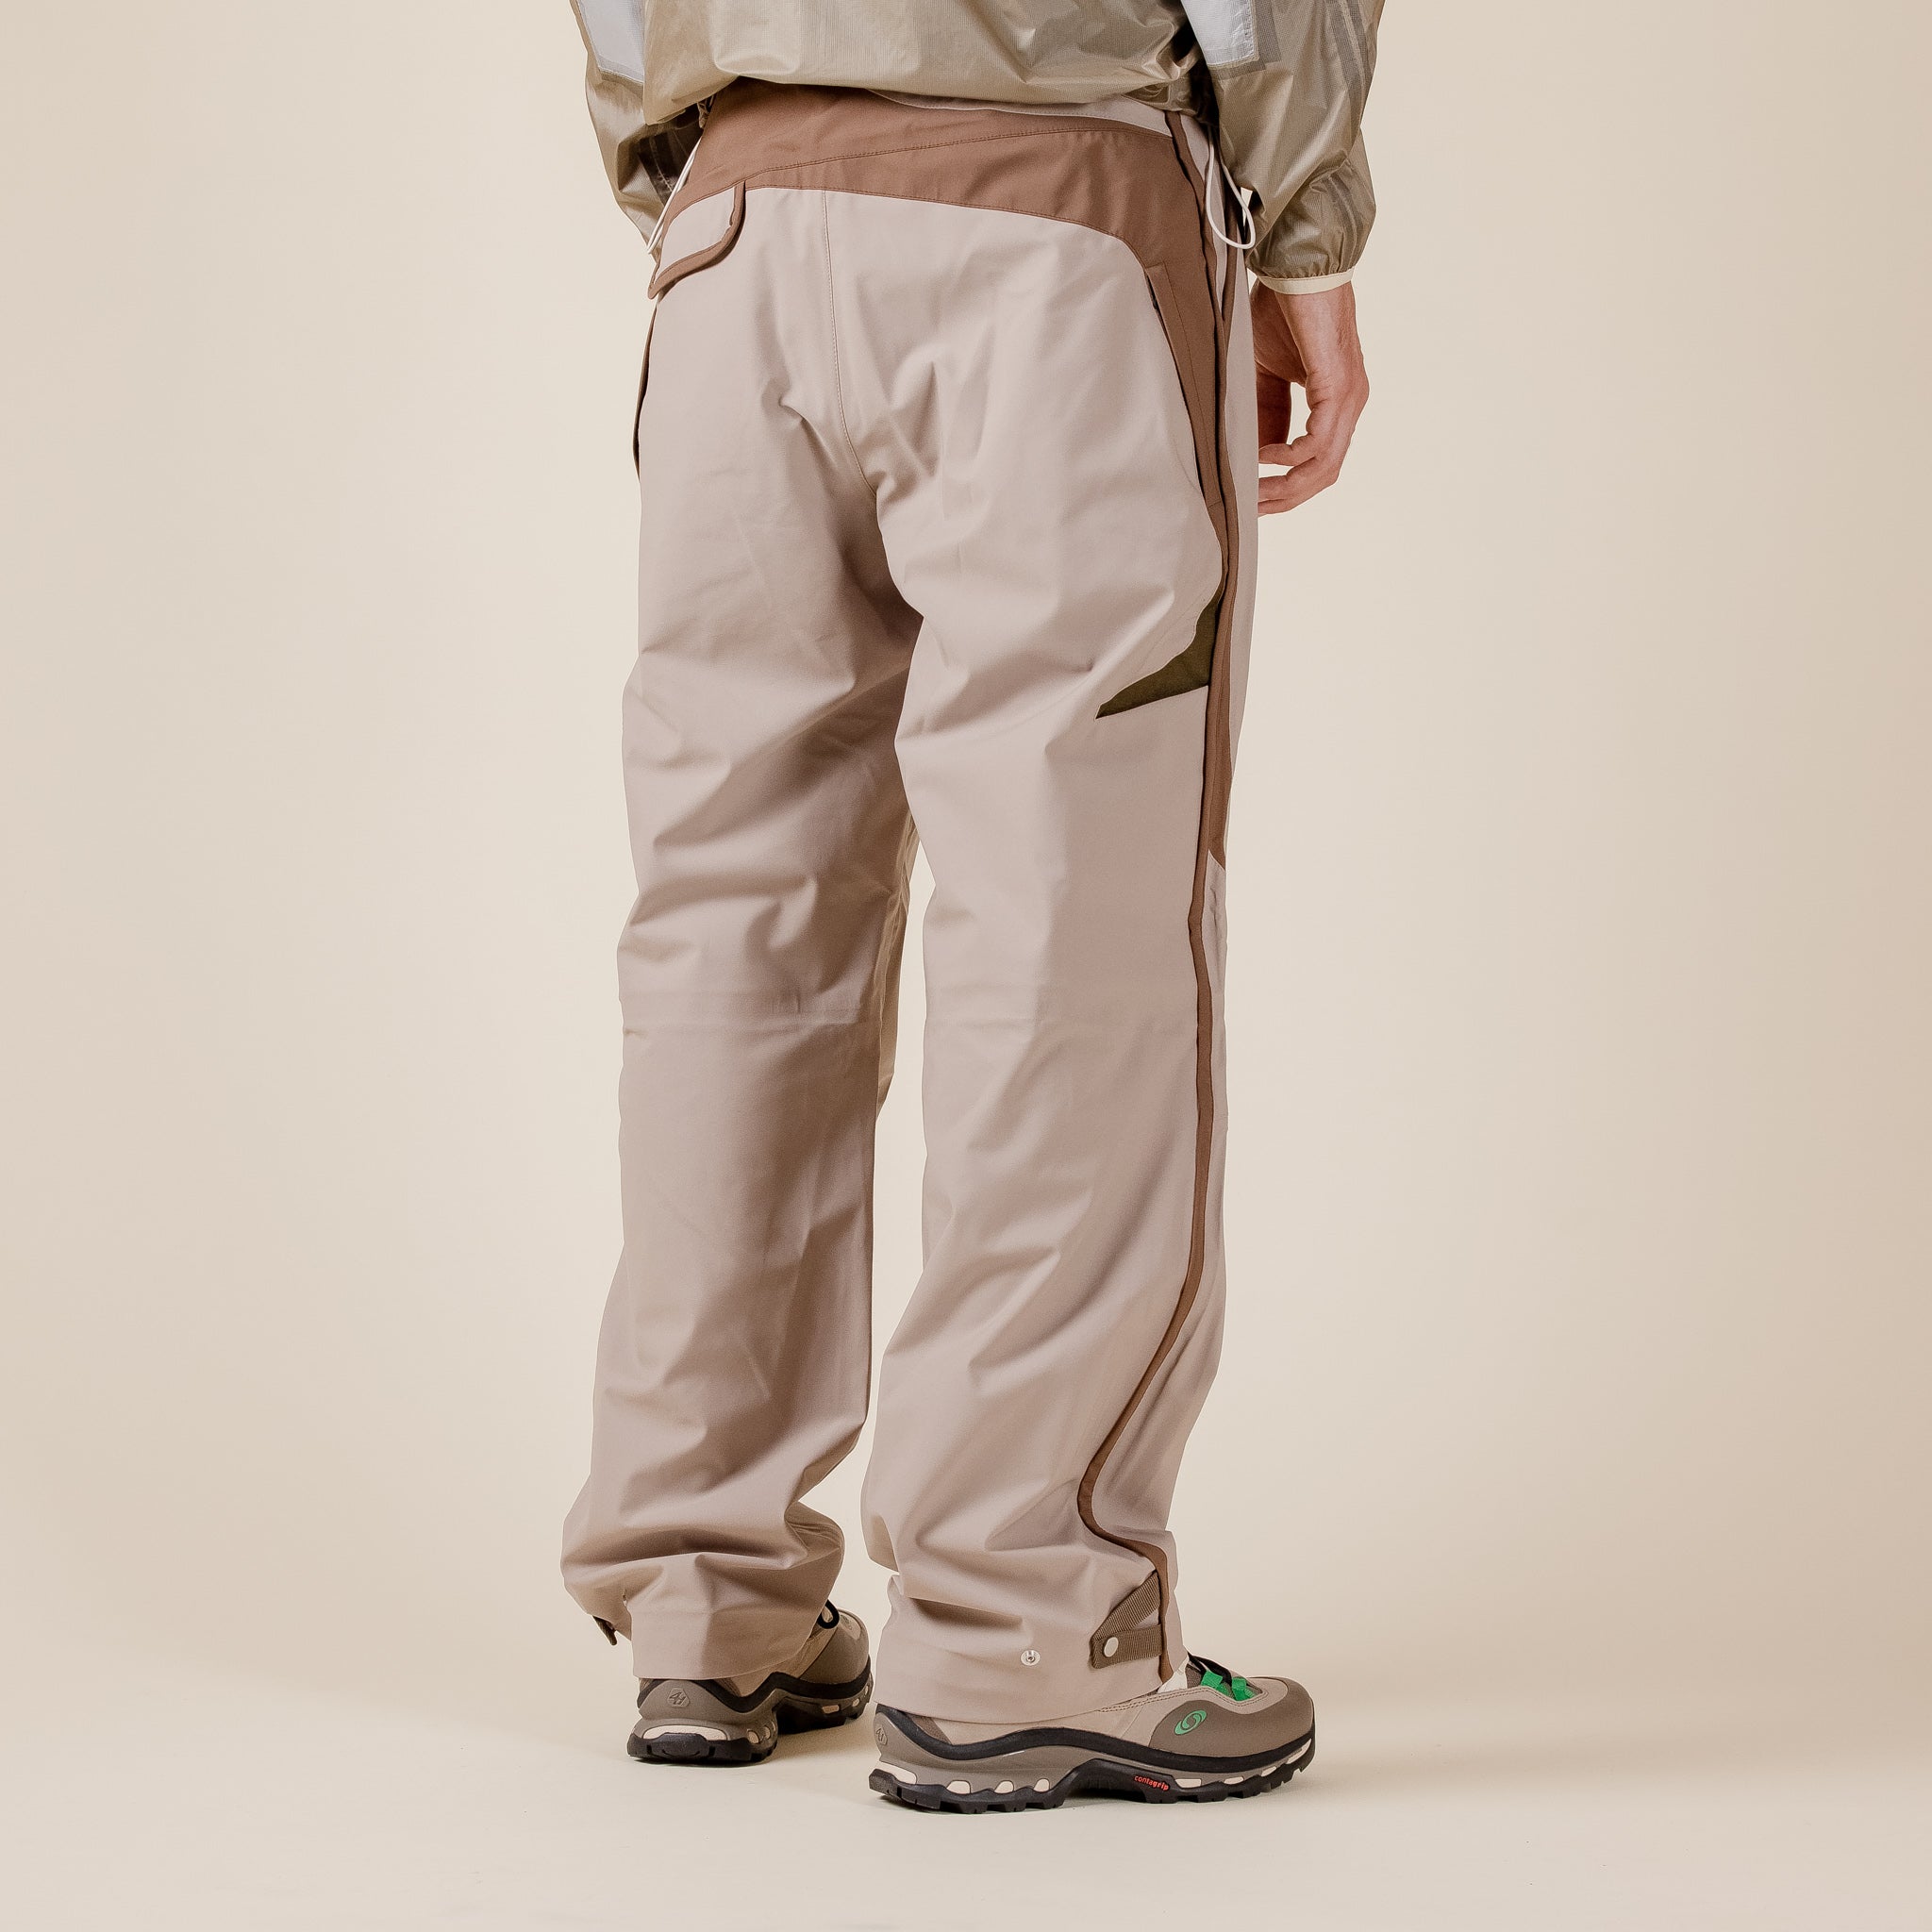 J EONGL I - Uniform Hardshell Pants - Beige "J EONGL I stockists" "J EONGL I"